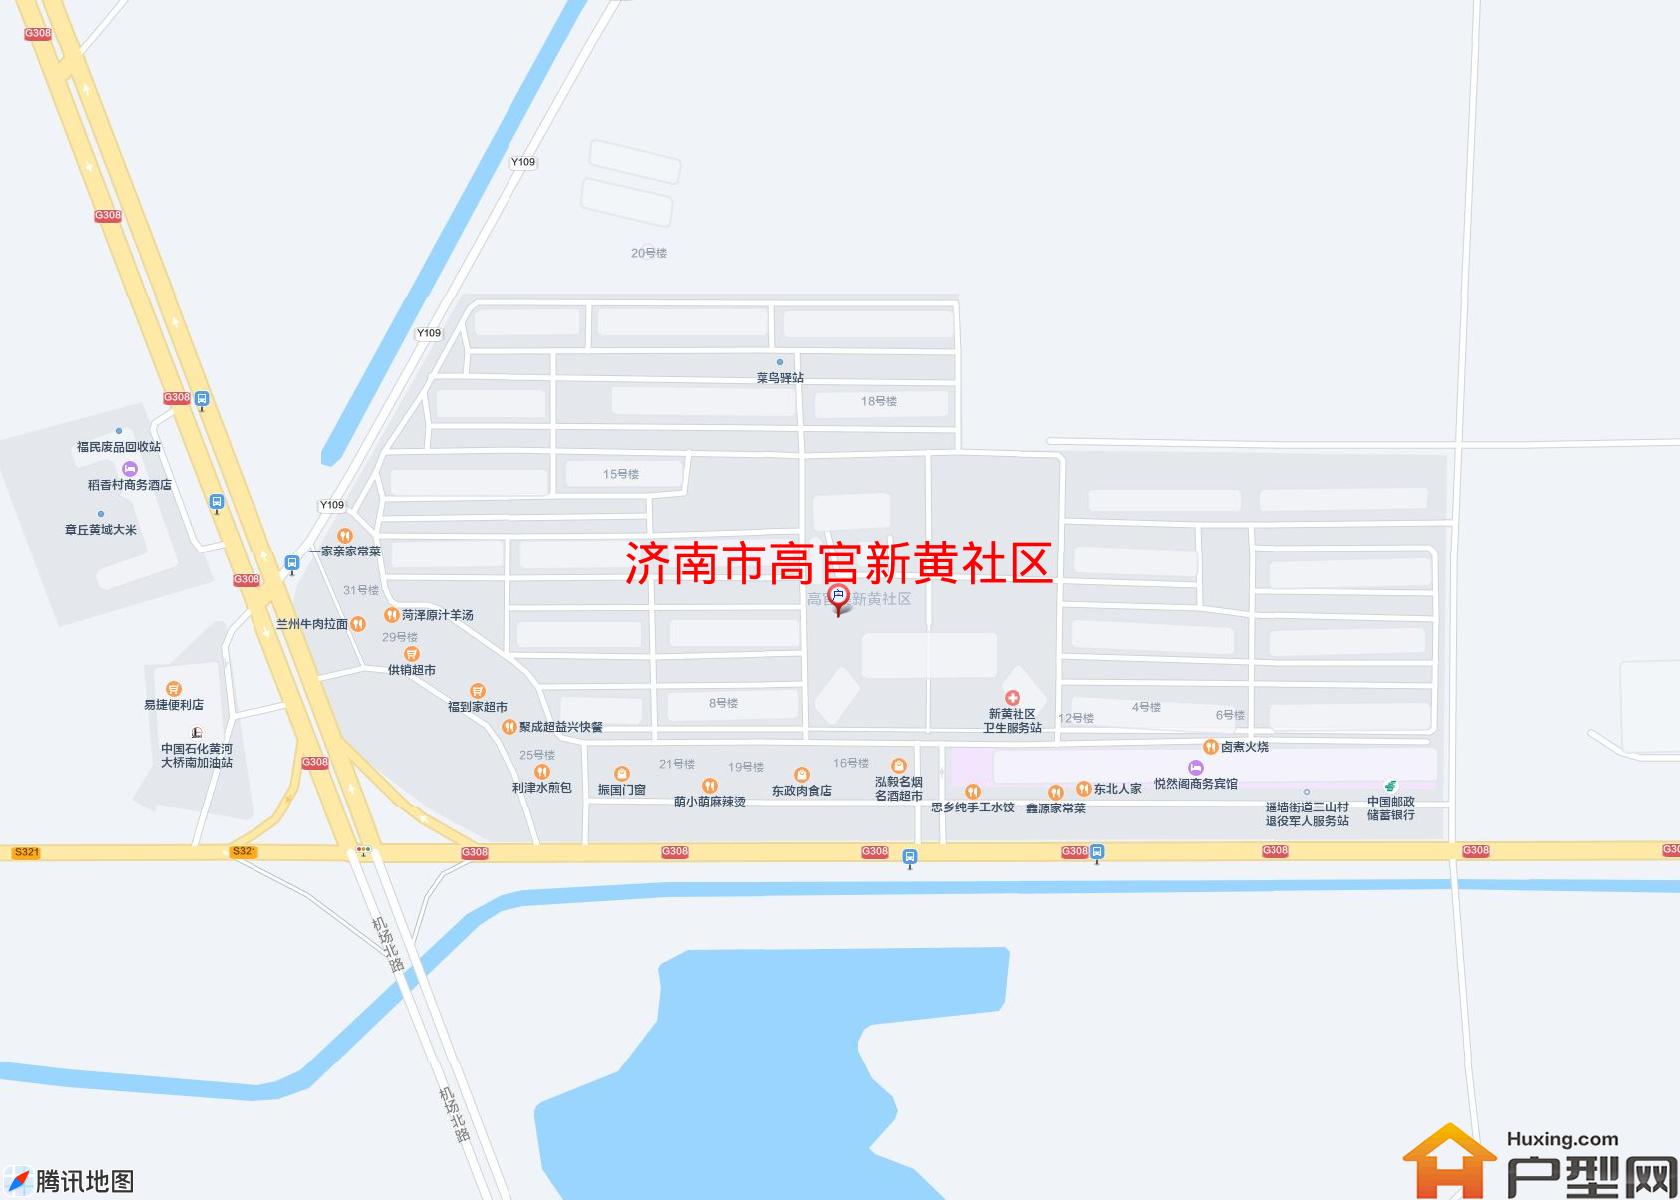 高官新黄社区小区 - 户型网